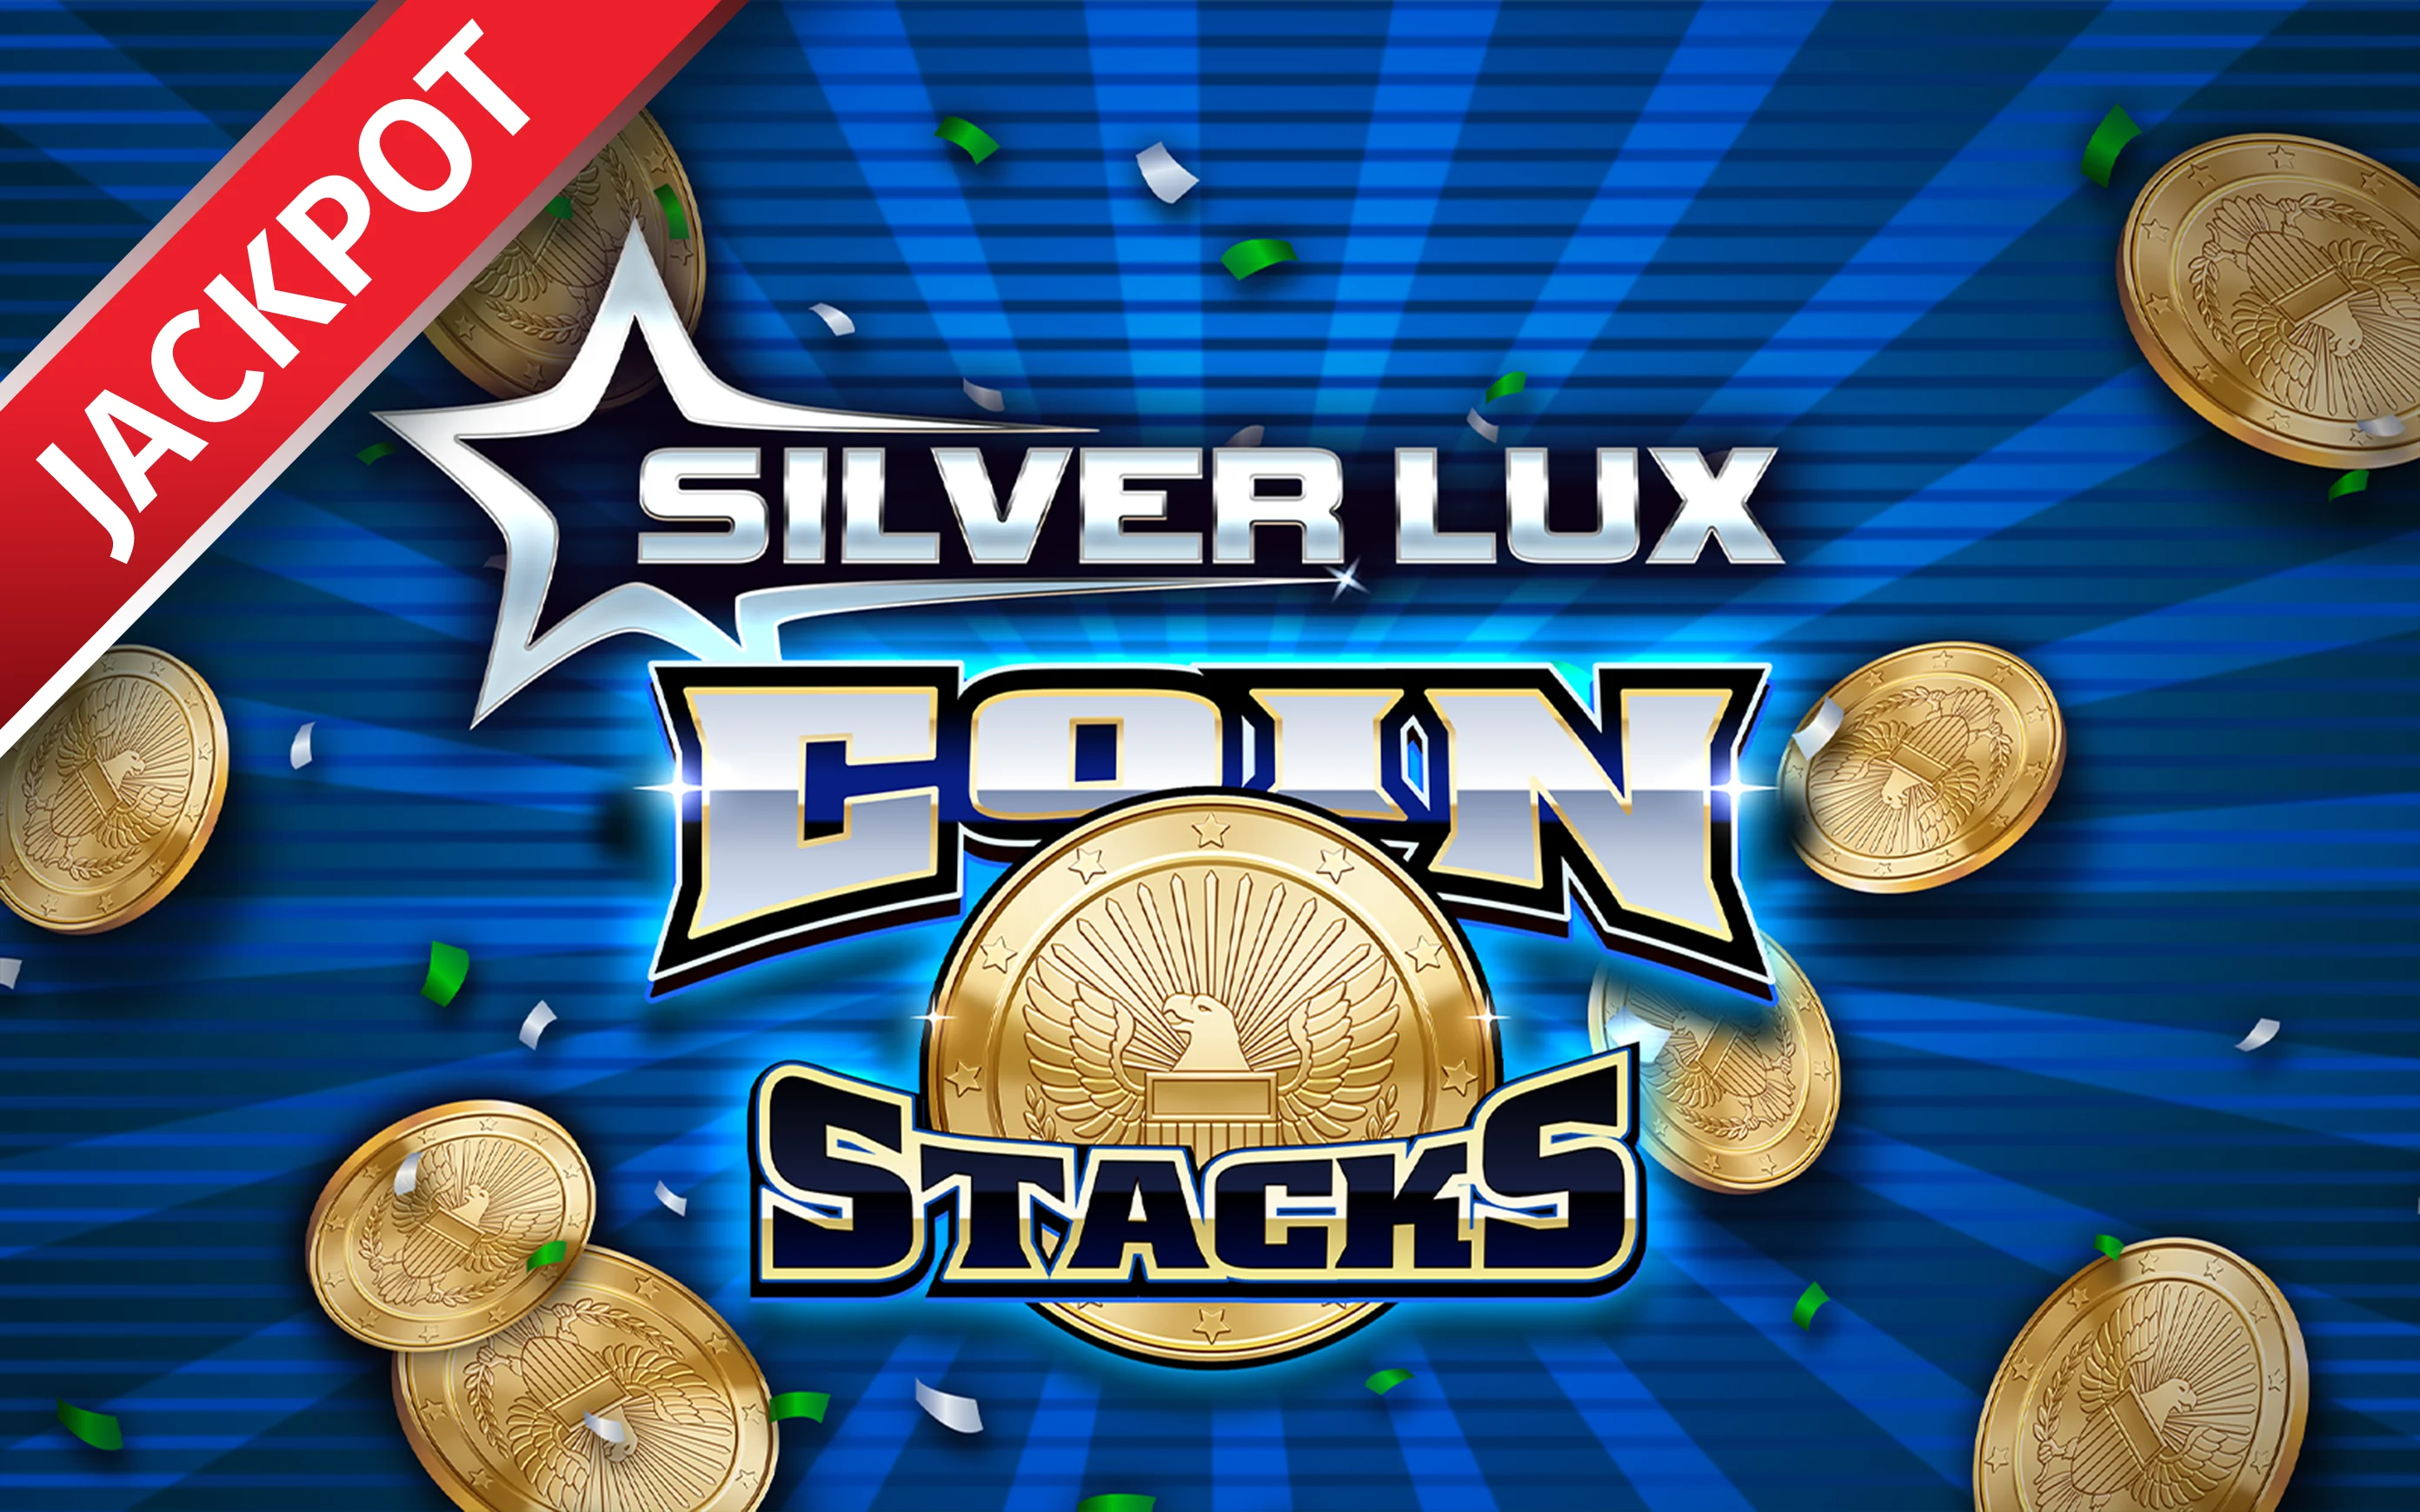 Jouer à Silver Lux – Coin Stacks sur le casino en ligne Starcasino.be